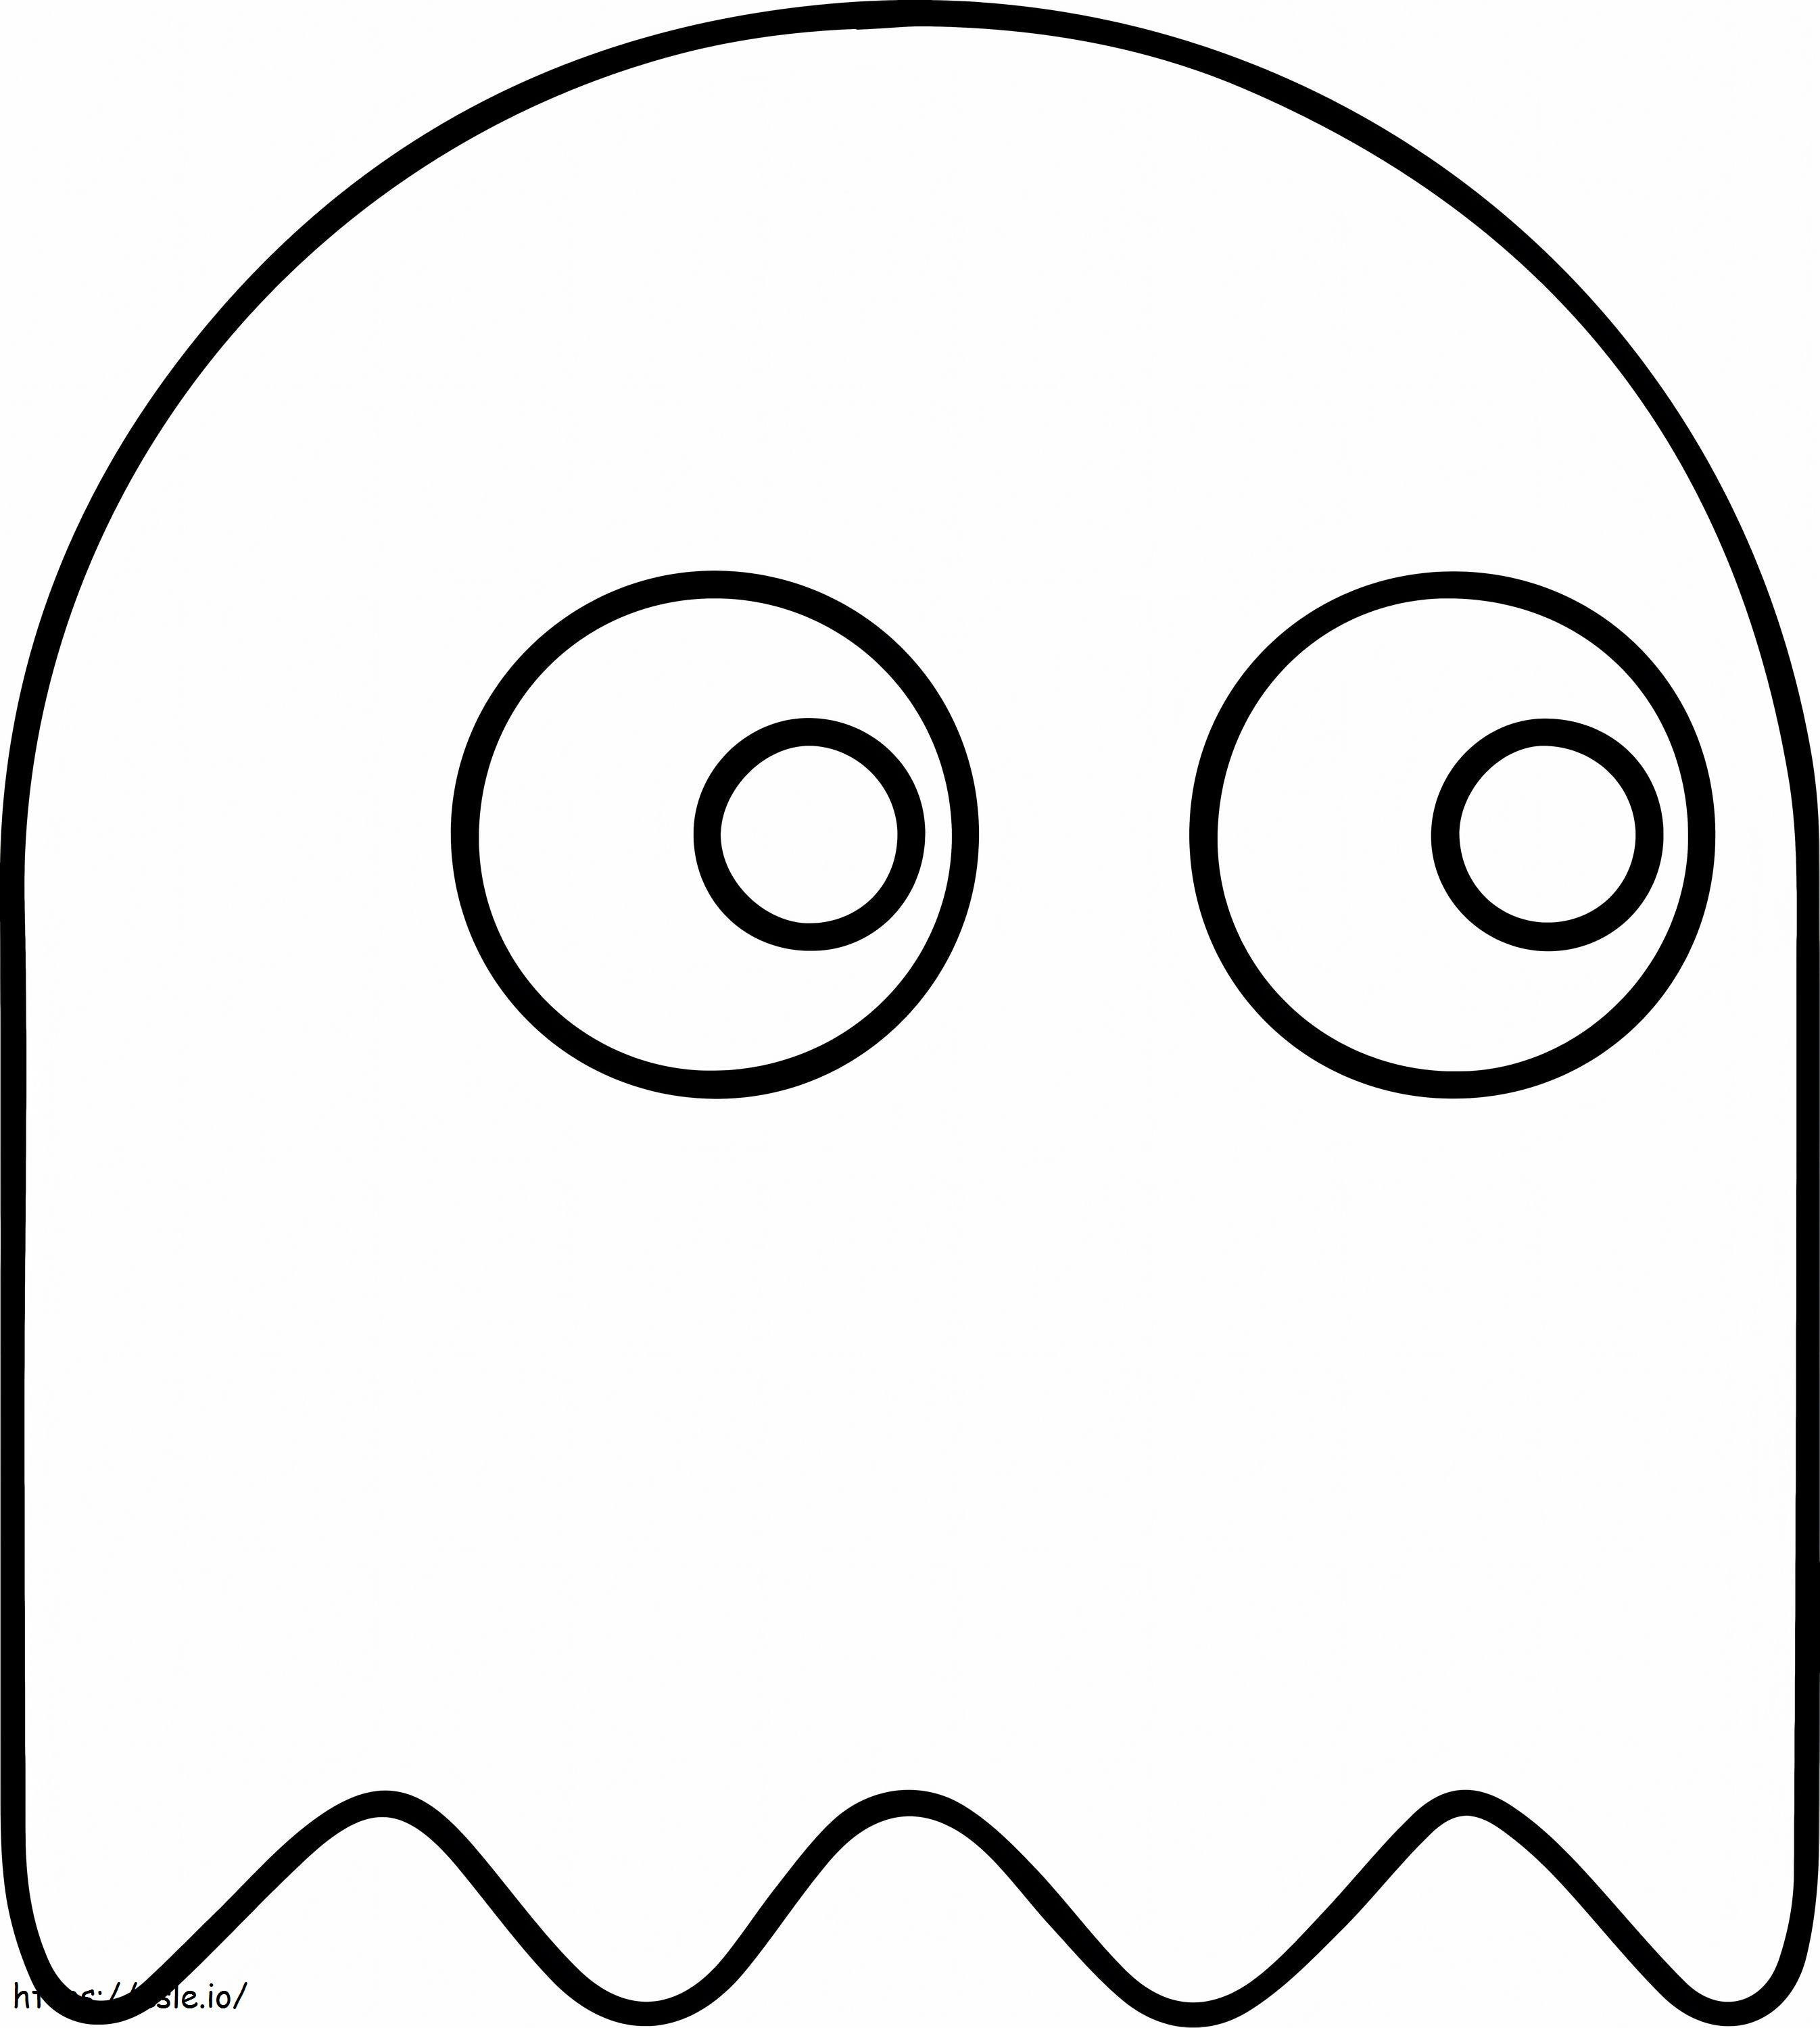  Fantasma En Pacman A4 para colorear